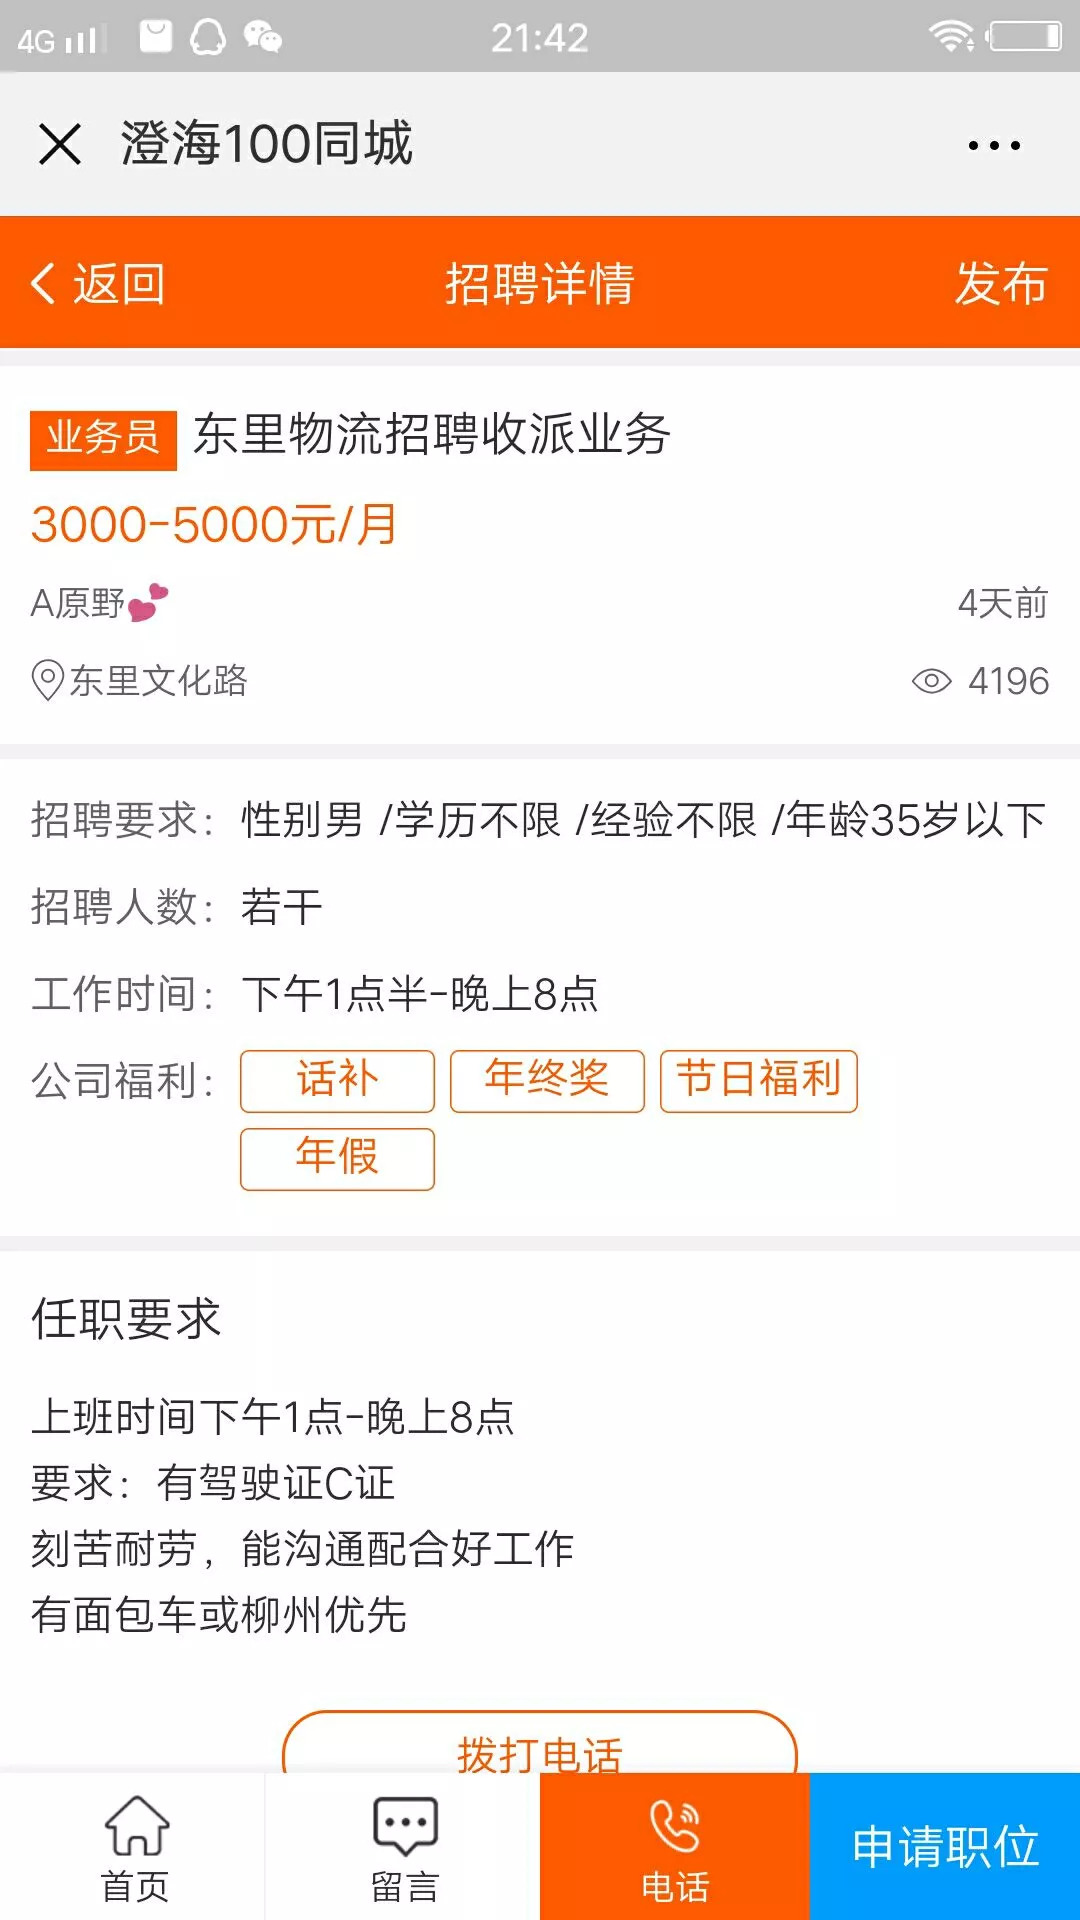 【同城】8月28日澄海招聘信息汇总,有土豪老板